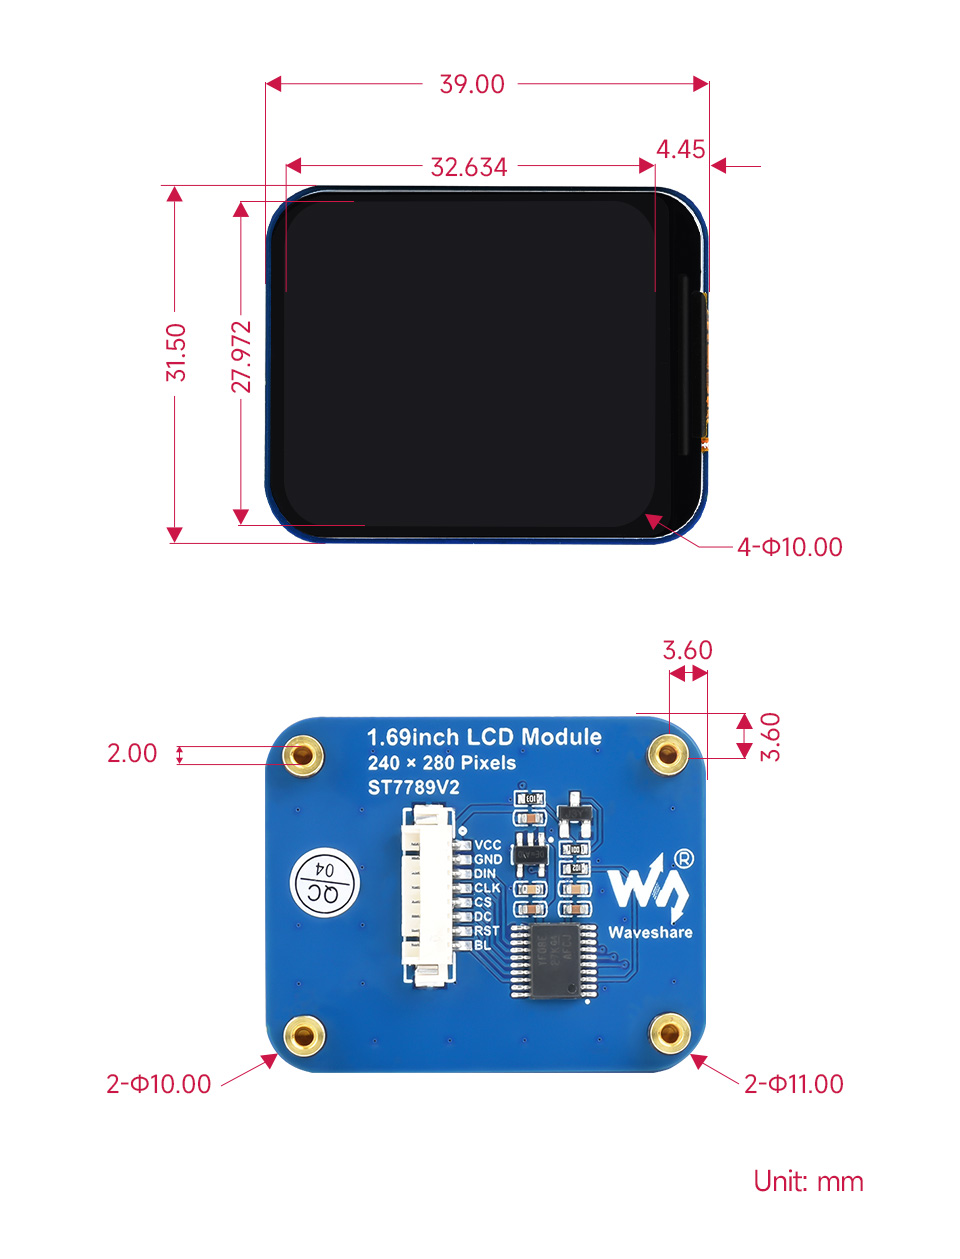 1.69inch-LCD-Module-details-size.jpg